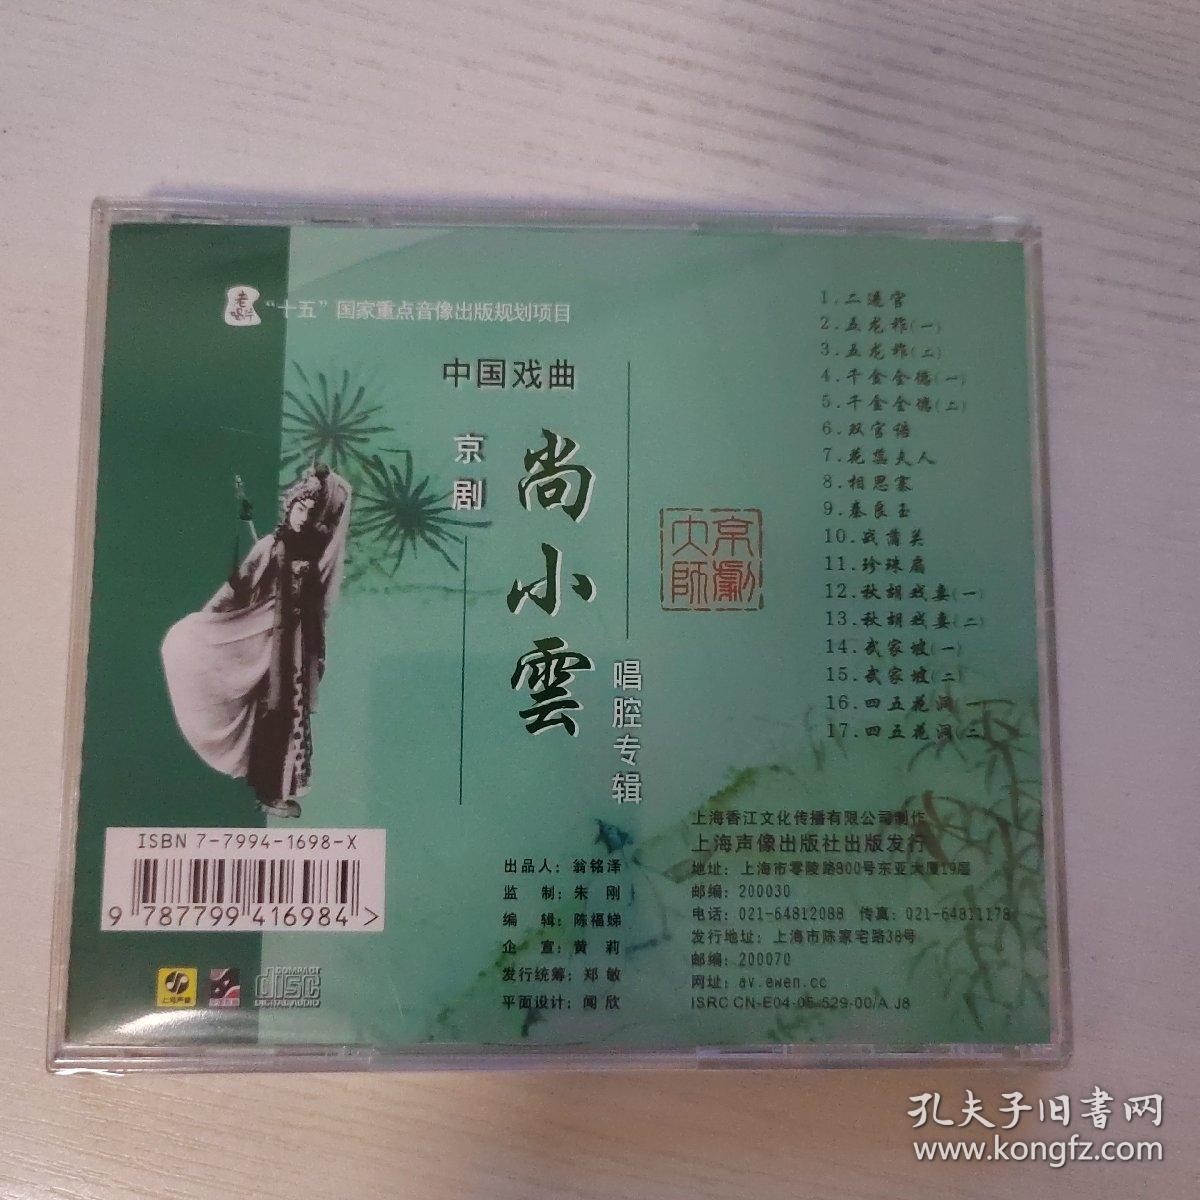 京剧大师 尚小云唱腔专辑 上海声像全新正版CD光盘